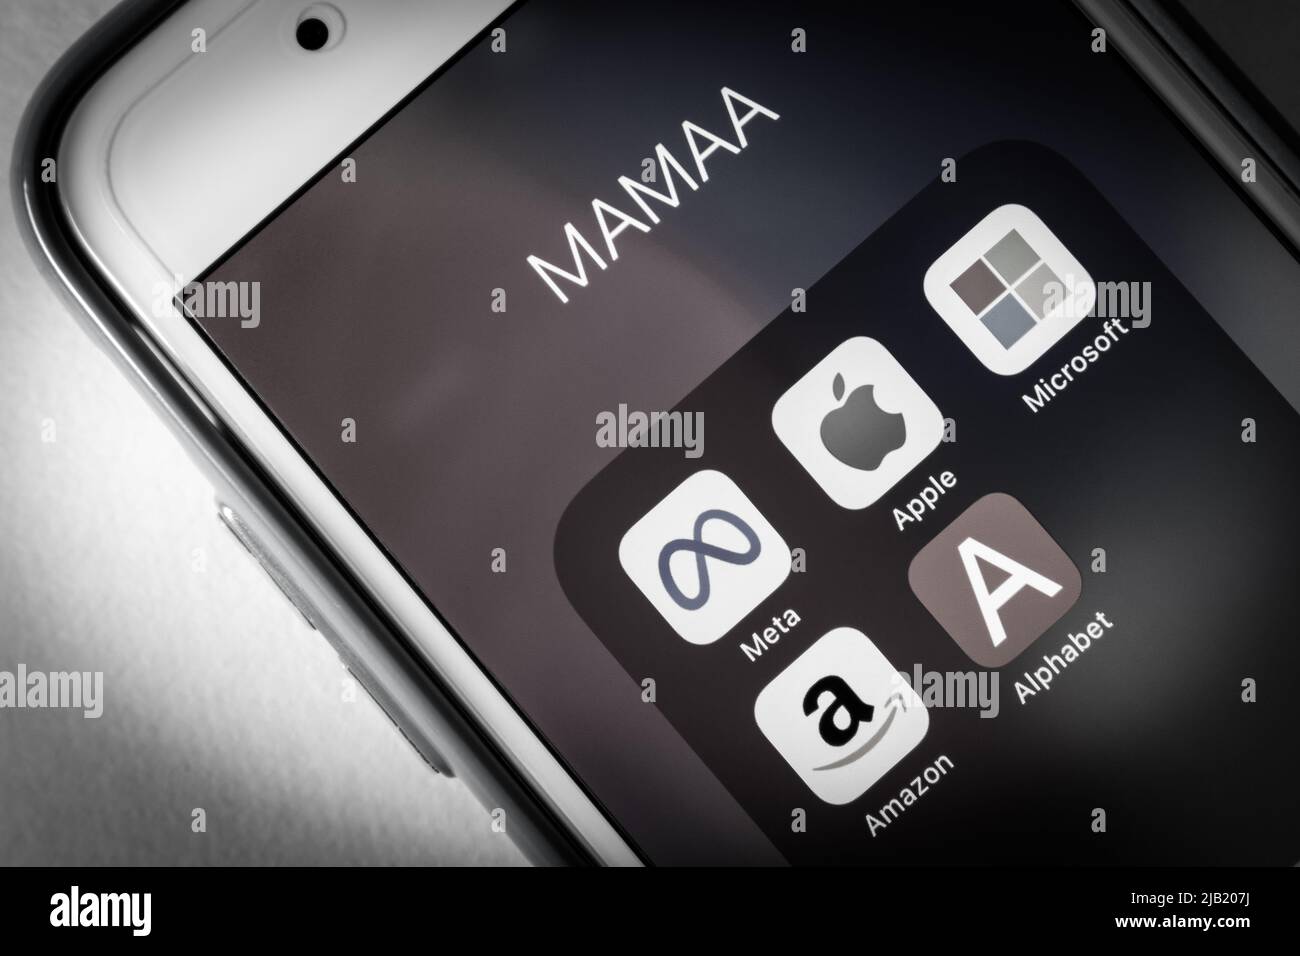 Symbole von MAMAA, steht für Meta, Apple, Microsoft, Amazon, Und Alphabet inc., 5 US-Tech-Giganten in der IT-Branche, auf einem iPhone in Schwarzweiß Stockfoto